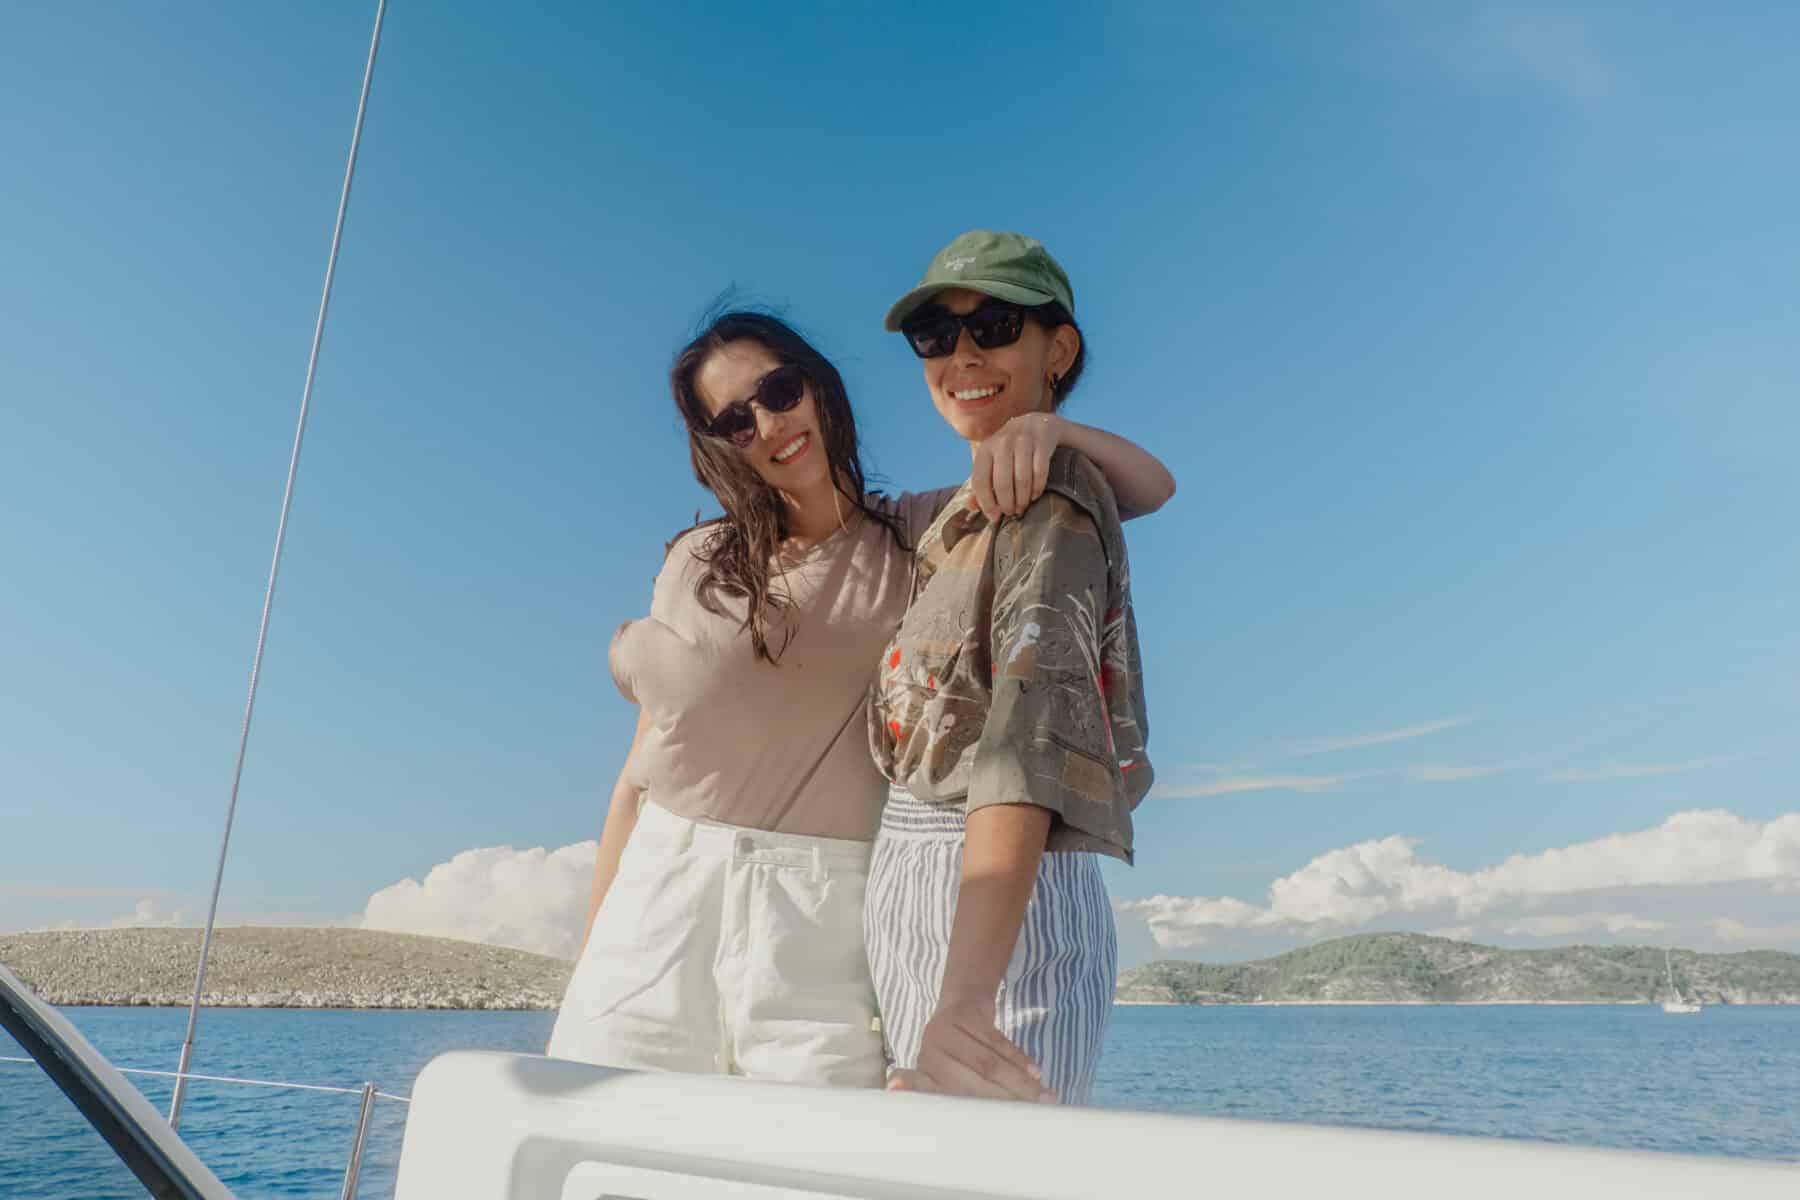 Zwei Frauen in lässiger Sommerkleidung lächeln und posieren zusammen auf einer Segelyacht, mit einem klaren blauen Himmel und ruhigem Meer im Hintergrund.